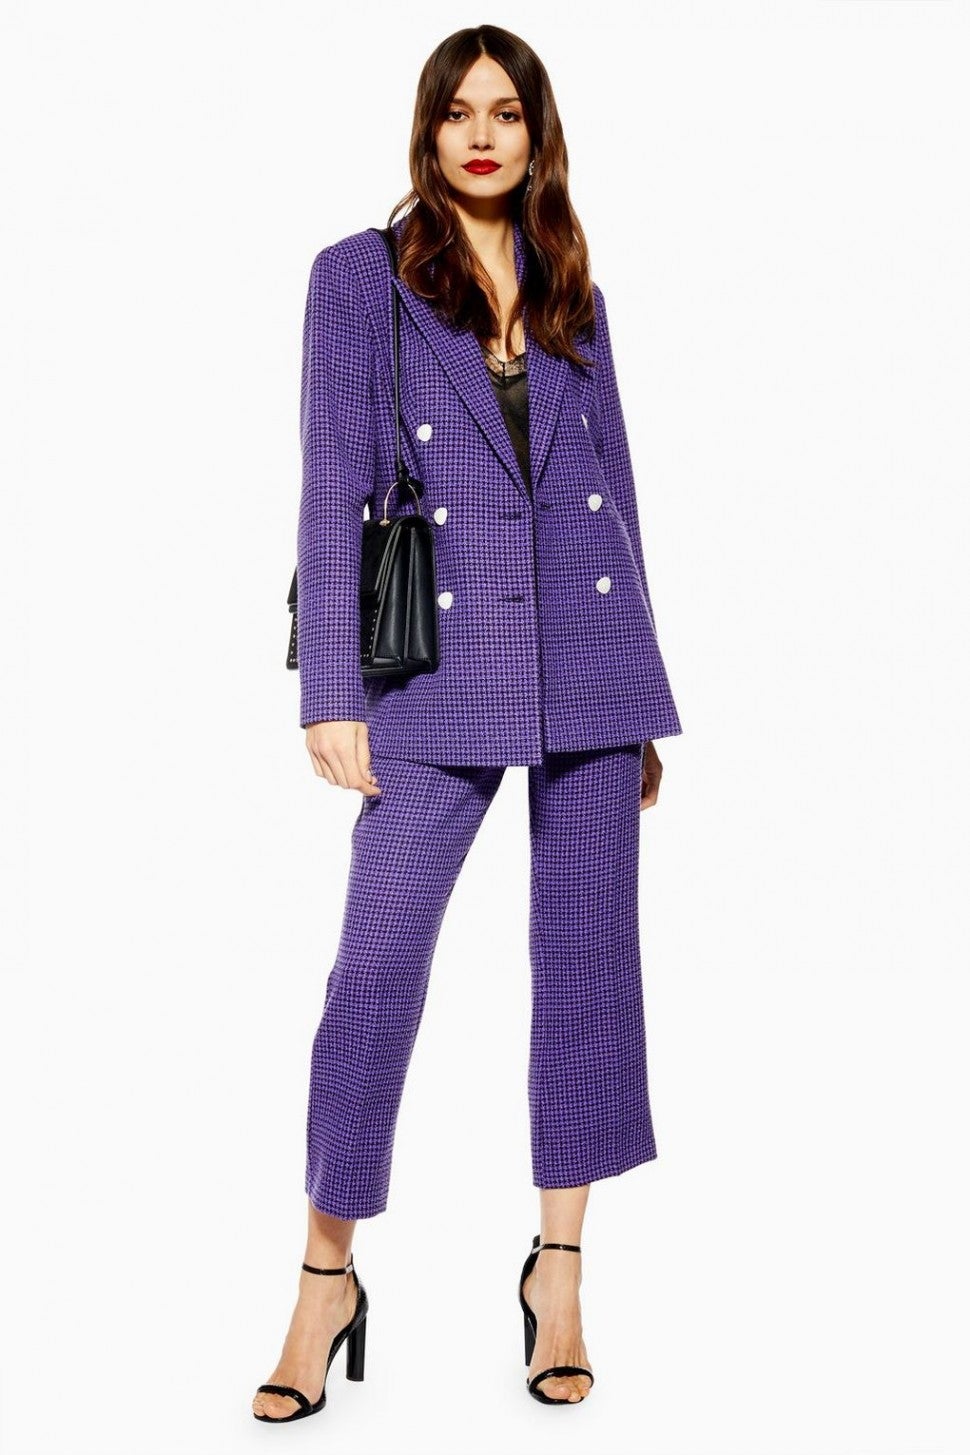 Topshop purple boucle suit